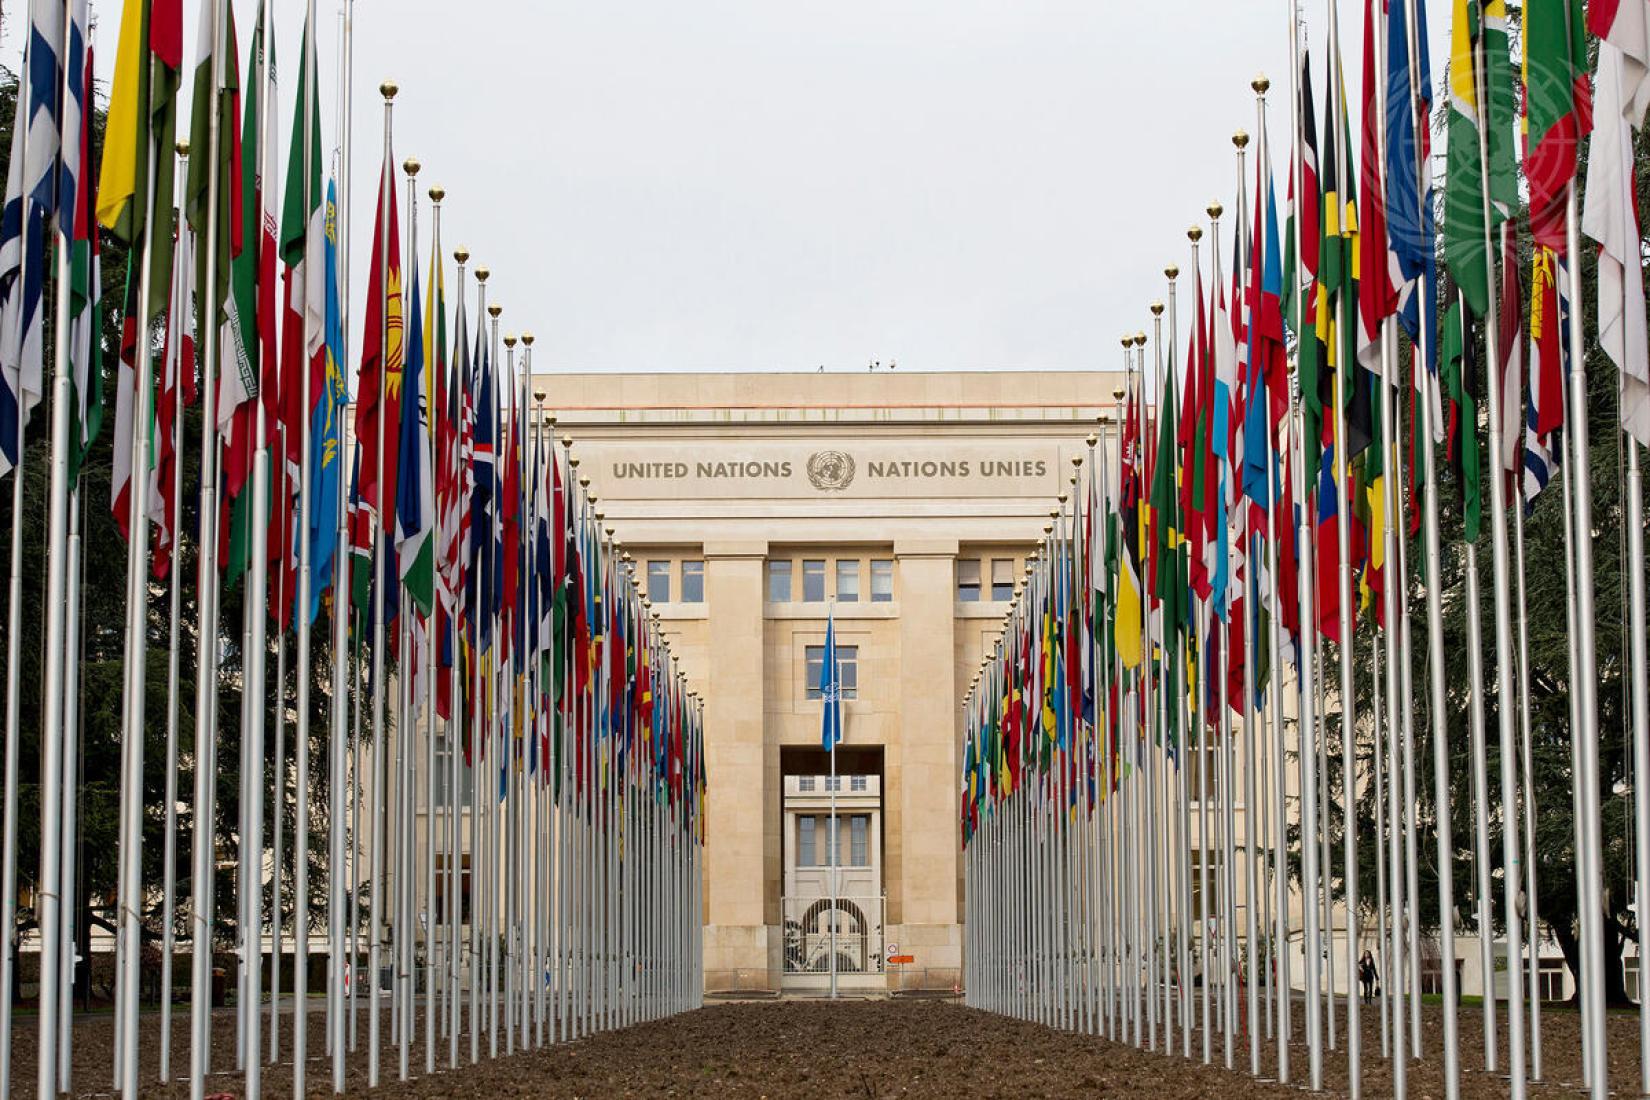 Bandeiras dos 193 Estados-membros das Nações Unidas, na entrada do Palácio das Nações, sede europeia da ONU em Genebra, na Suíça. 